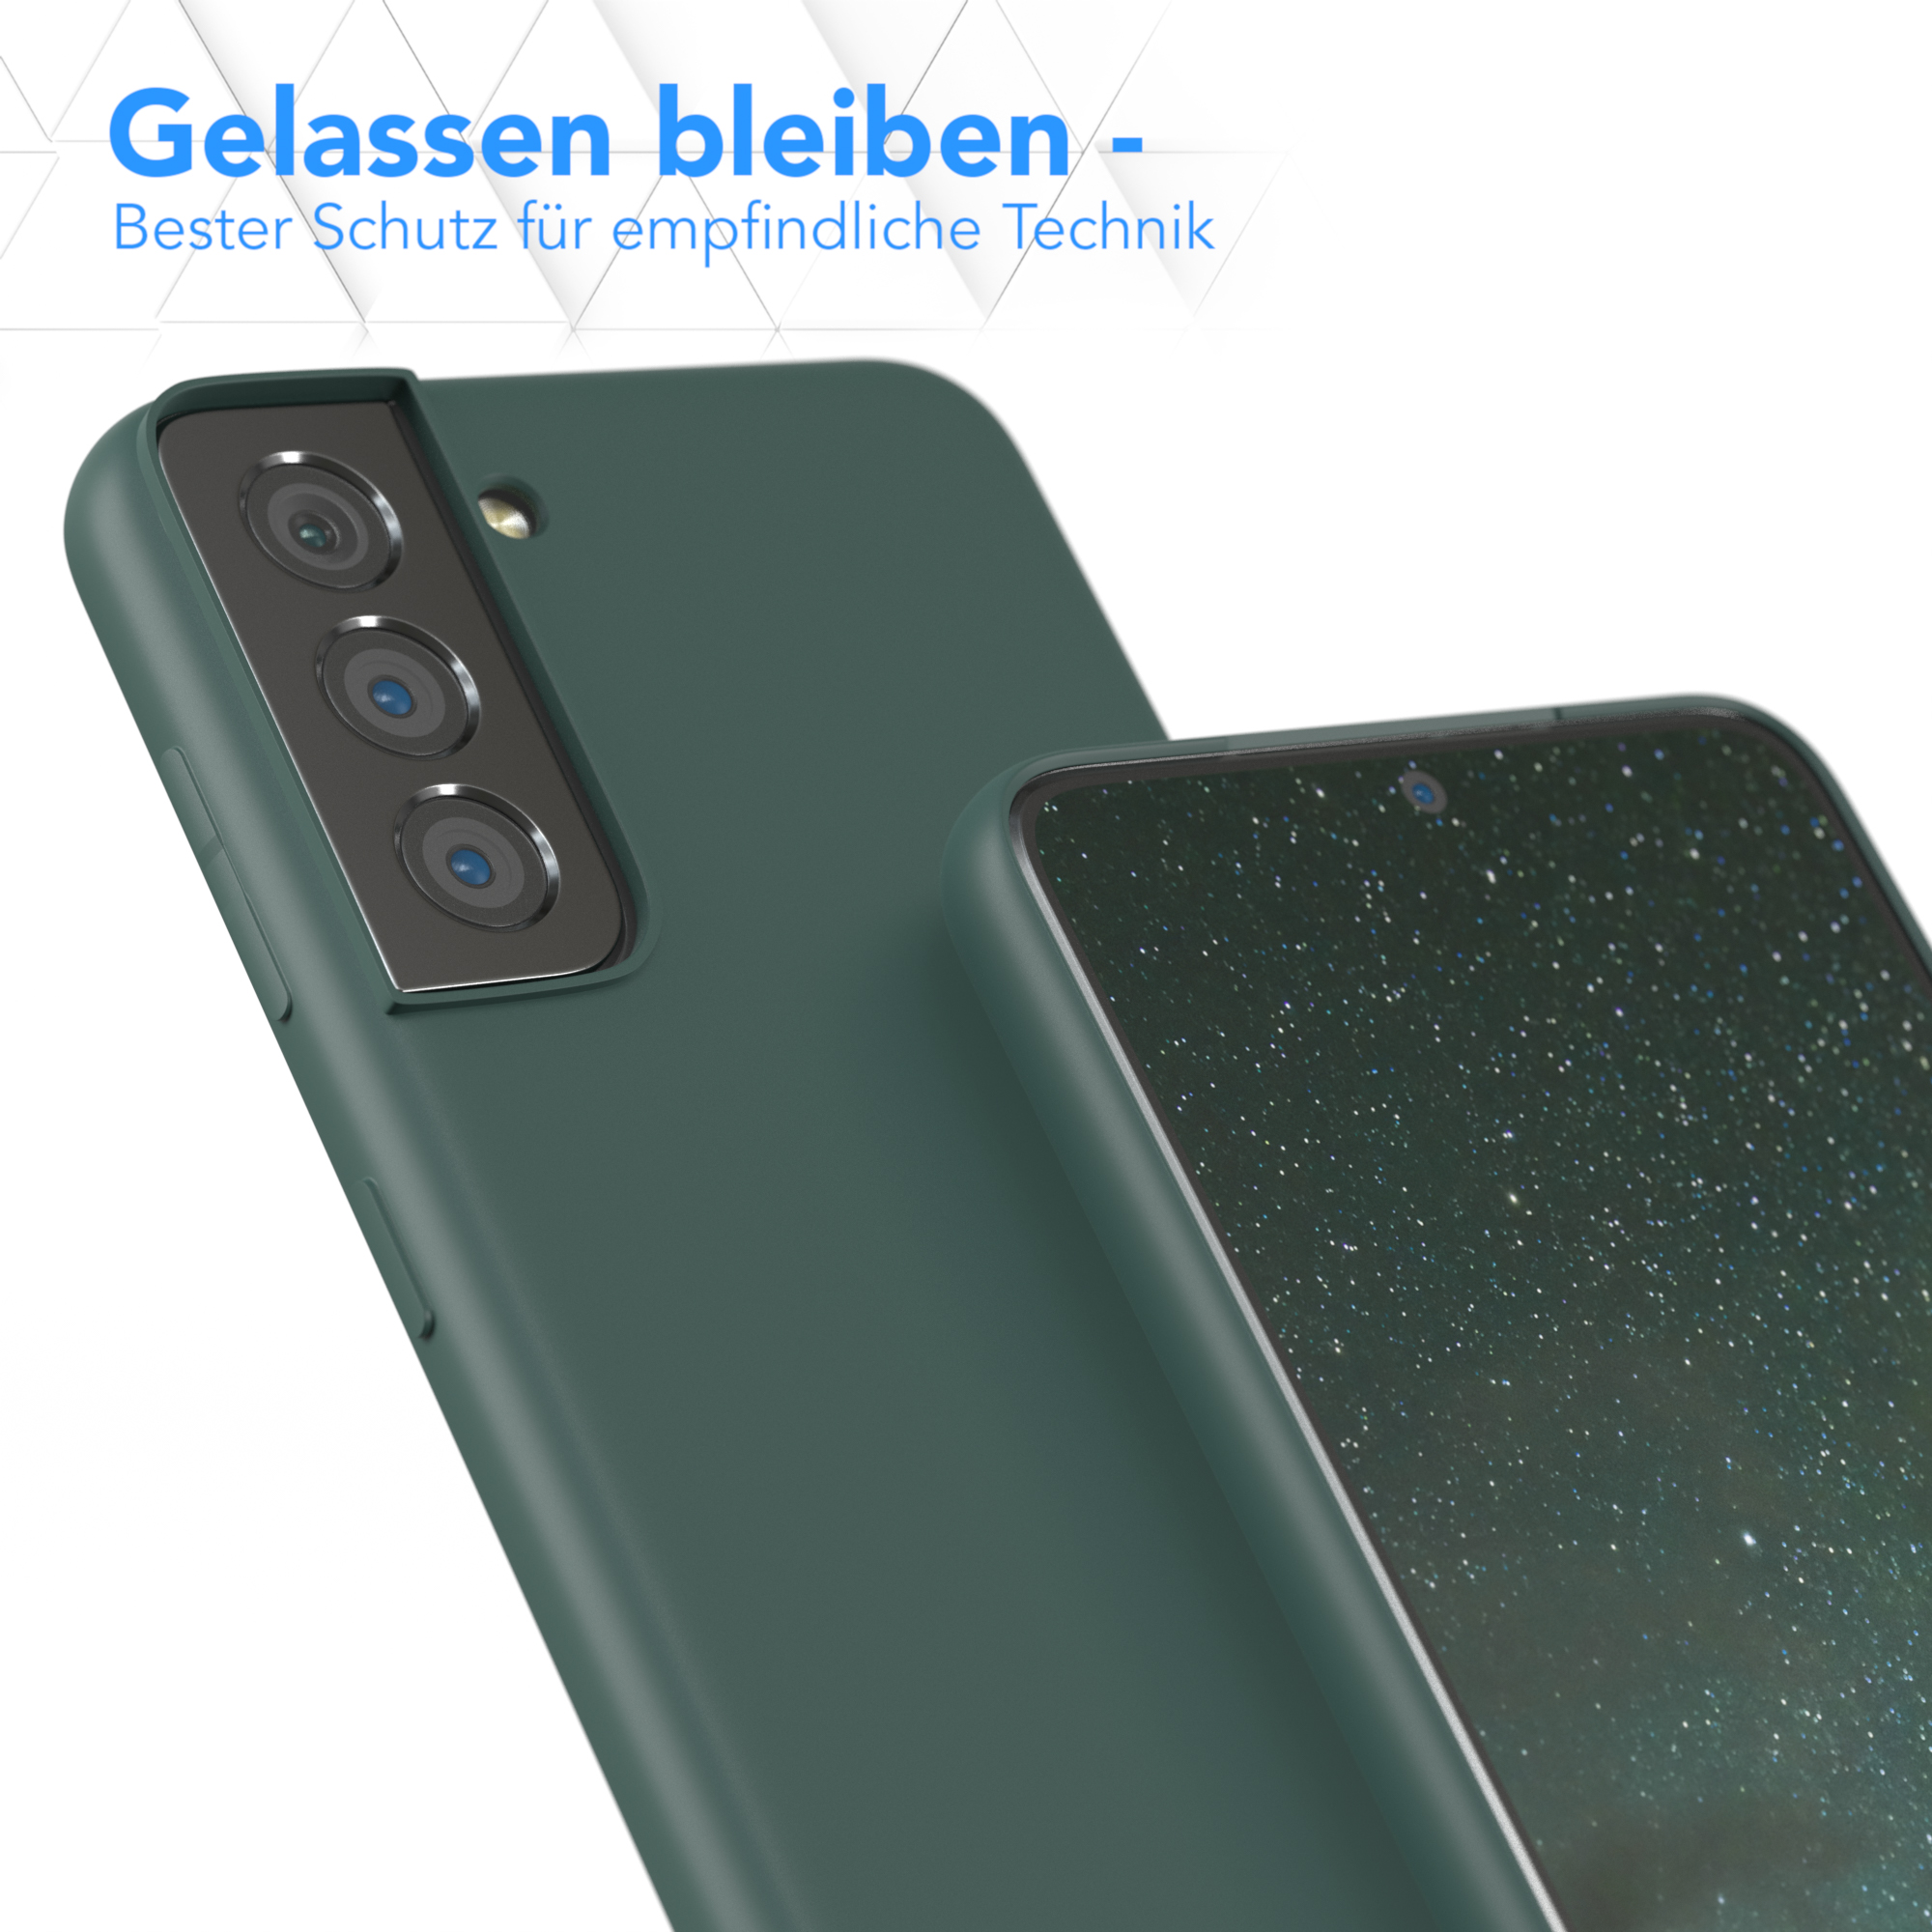 EAZY CASE S21 Nachtgrün Samsung, / Matt, TPU Silikon Backcover, Grün 5G, Handycase Galaxy